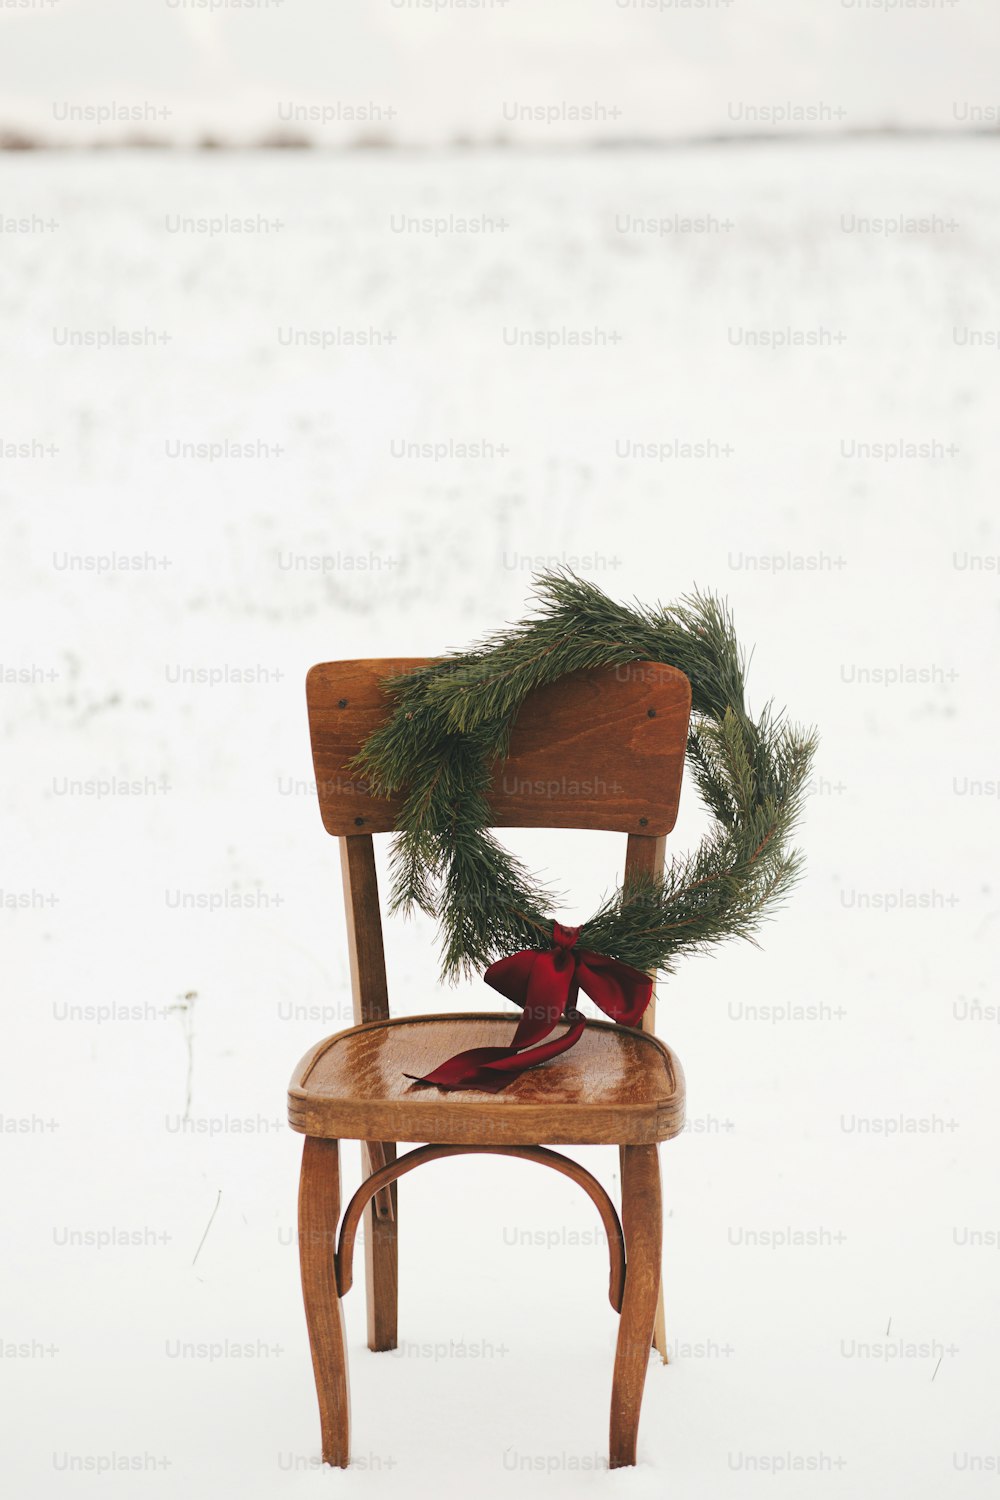 Joyeux noël! Couronne de Noël sur une chaise rustique dans un champ d'hiver enneigé. Vacances d'hiver à la campagne. Espace pour le texte. Couronne de Noël élégante avec des branches de pin et un arc rouge suspendu à une chaise en bois